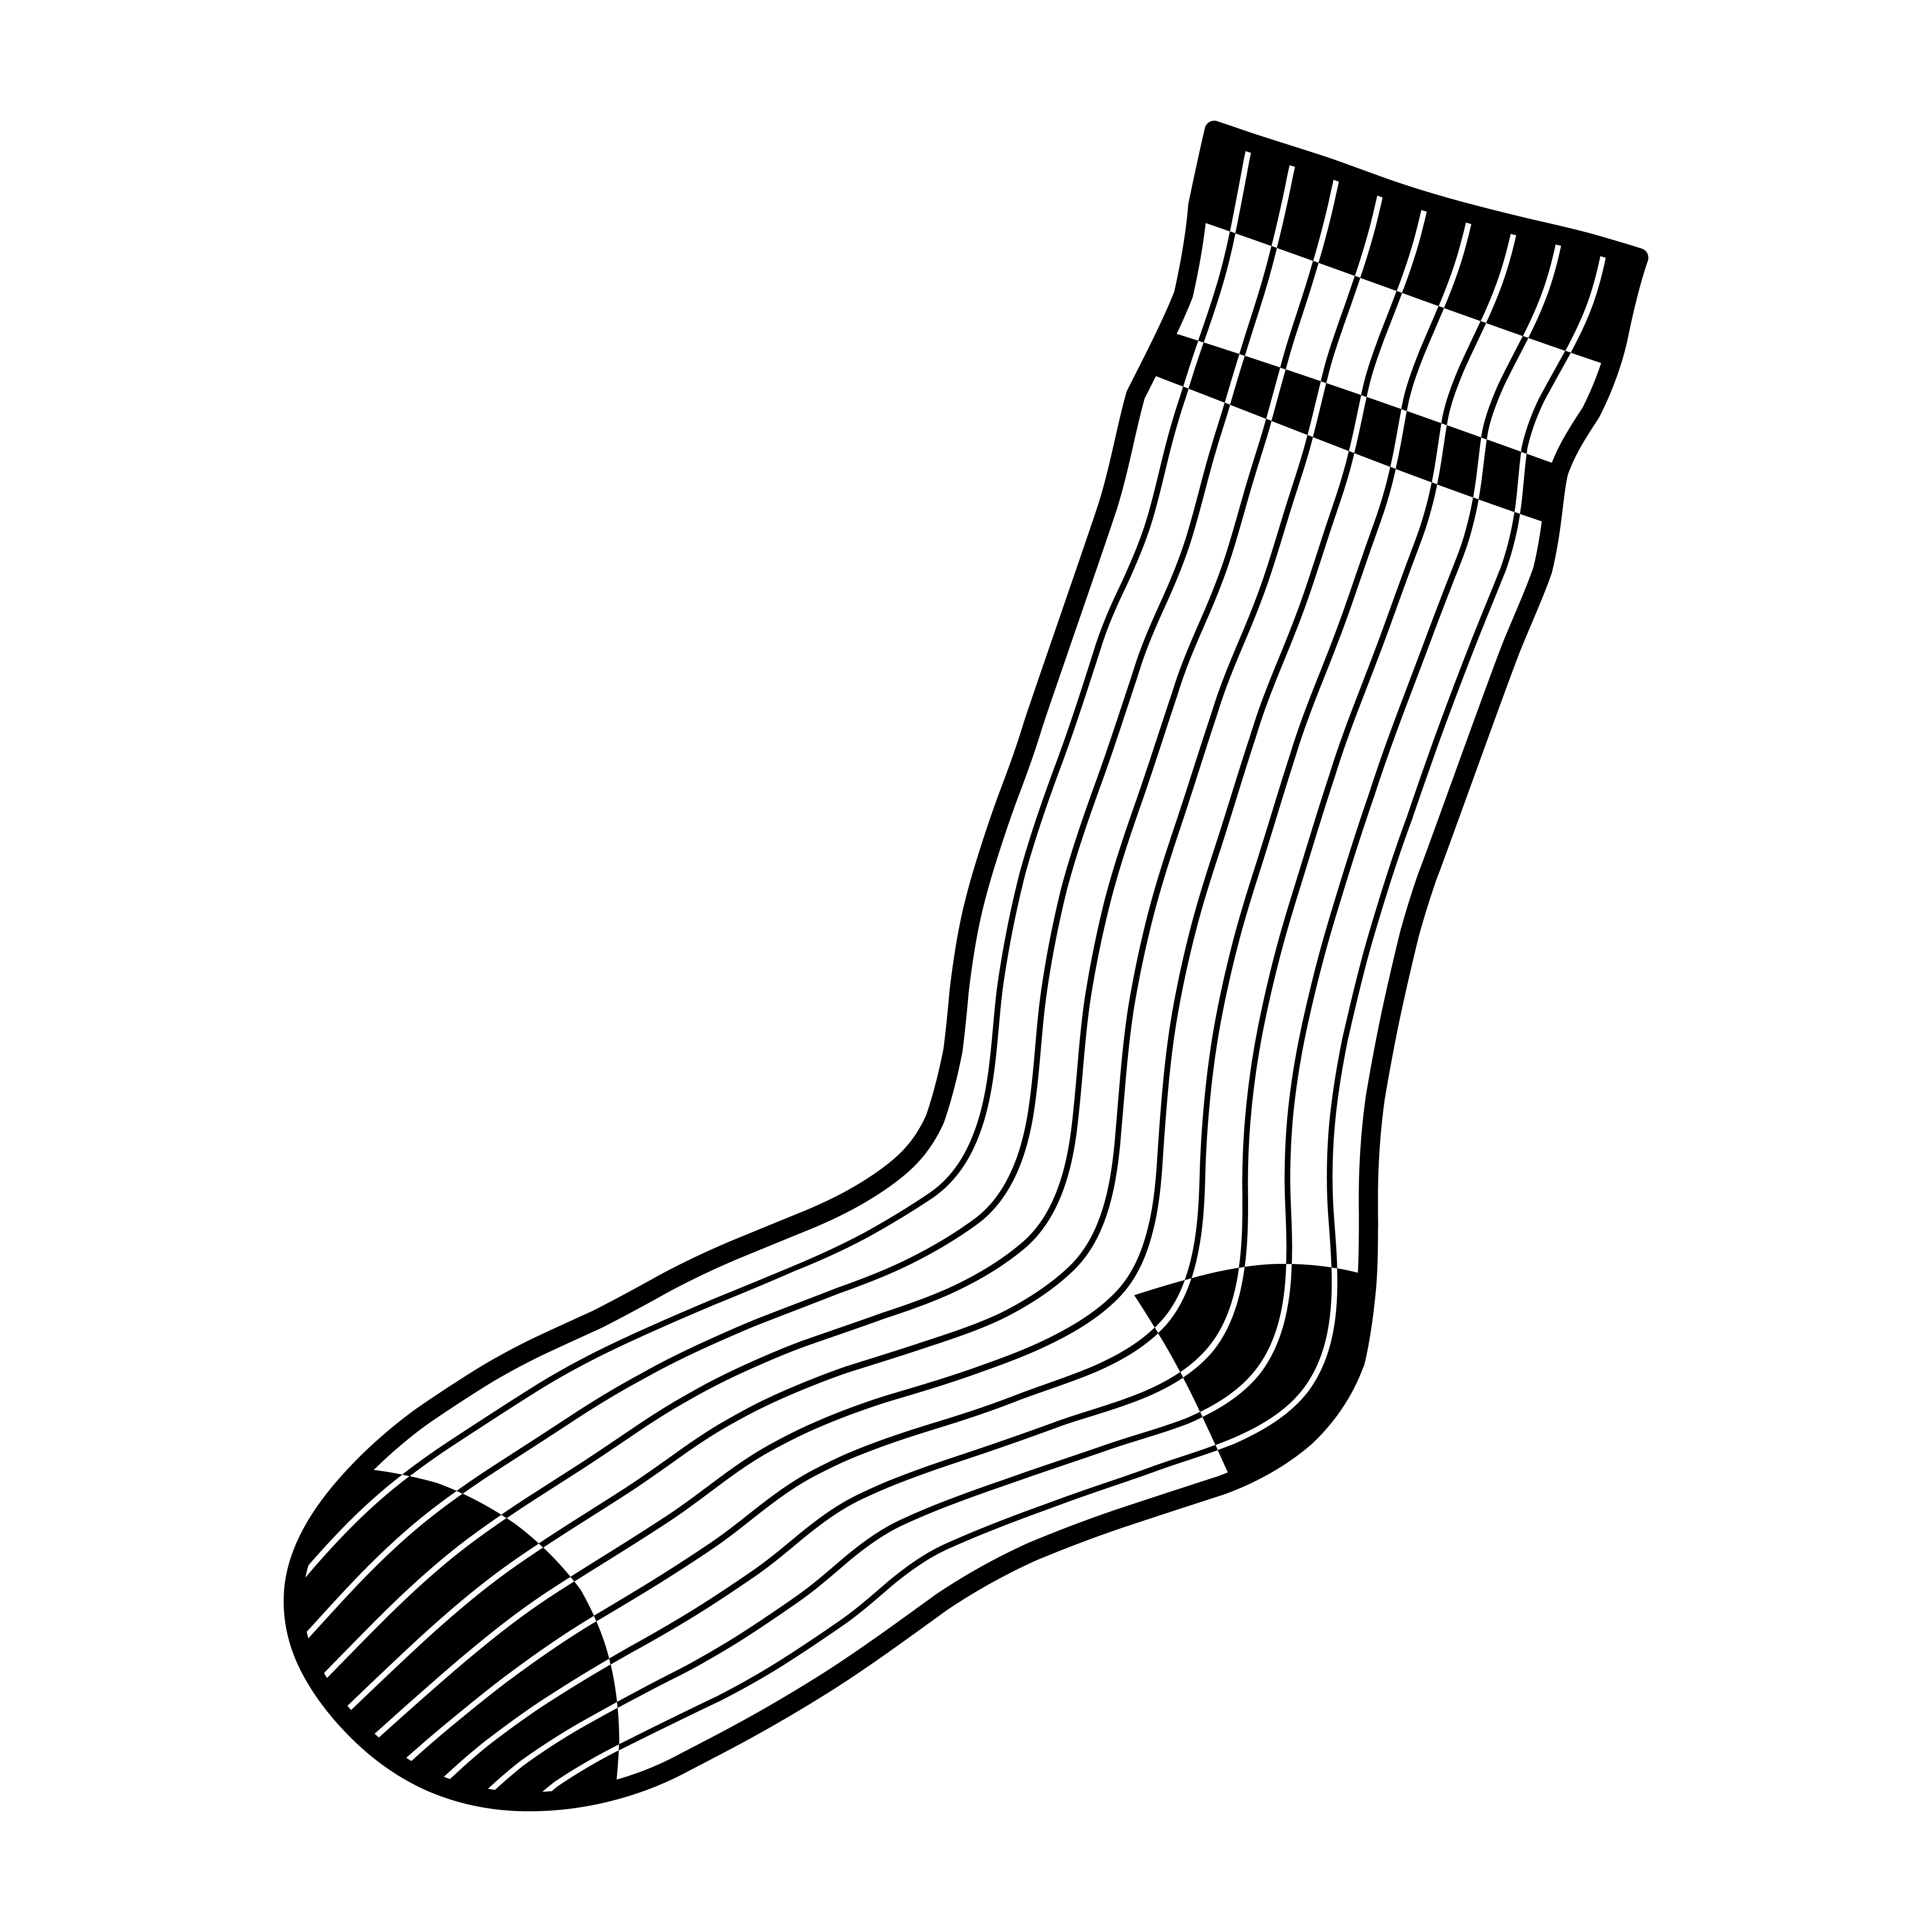 Socks Clothing for Feet 554919 Vector Art at Vecteezy